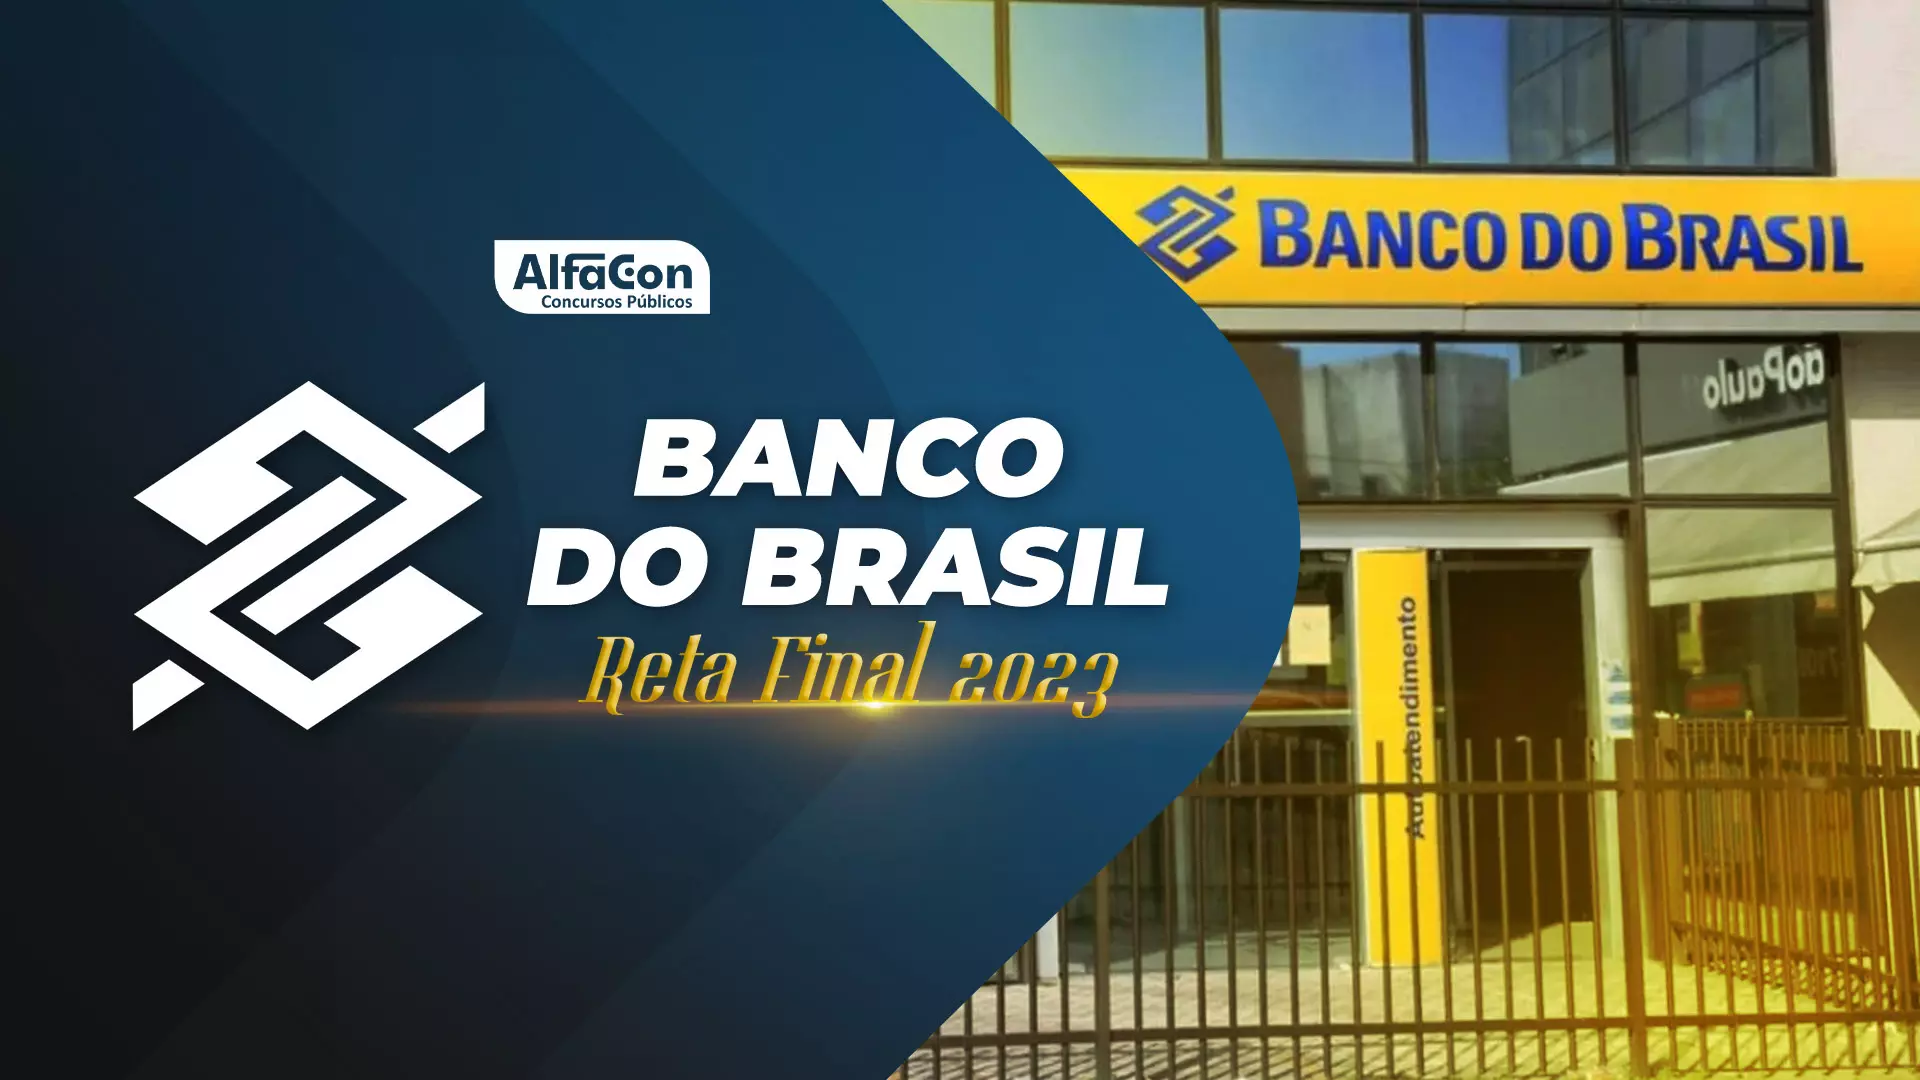 Banco do Brasil reta final. Prova sera no próximo Domingo, confira dicas para se dar bem.